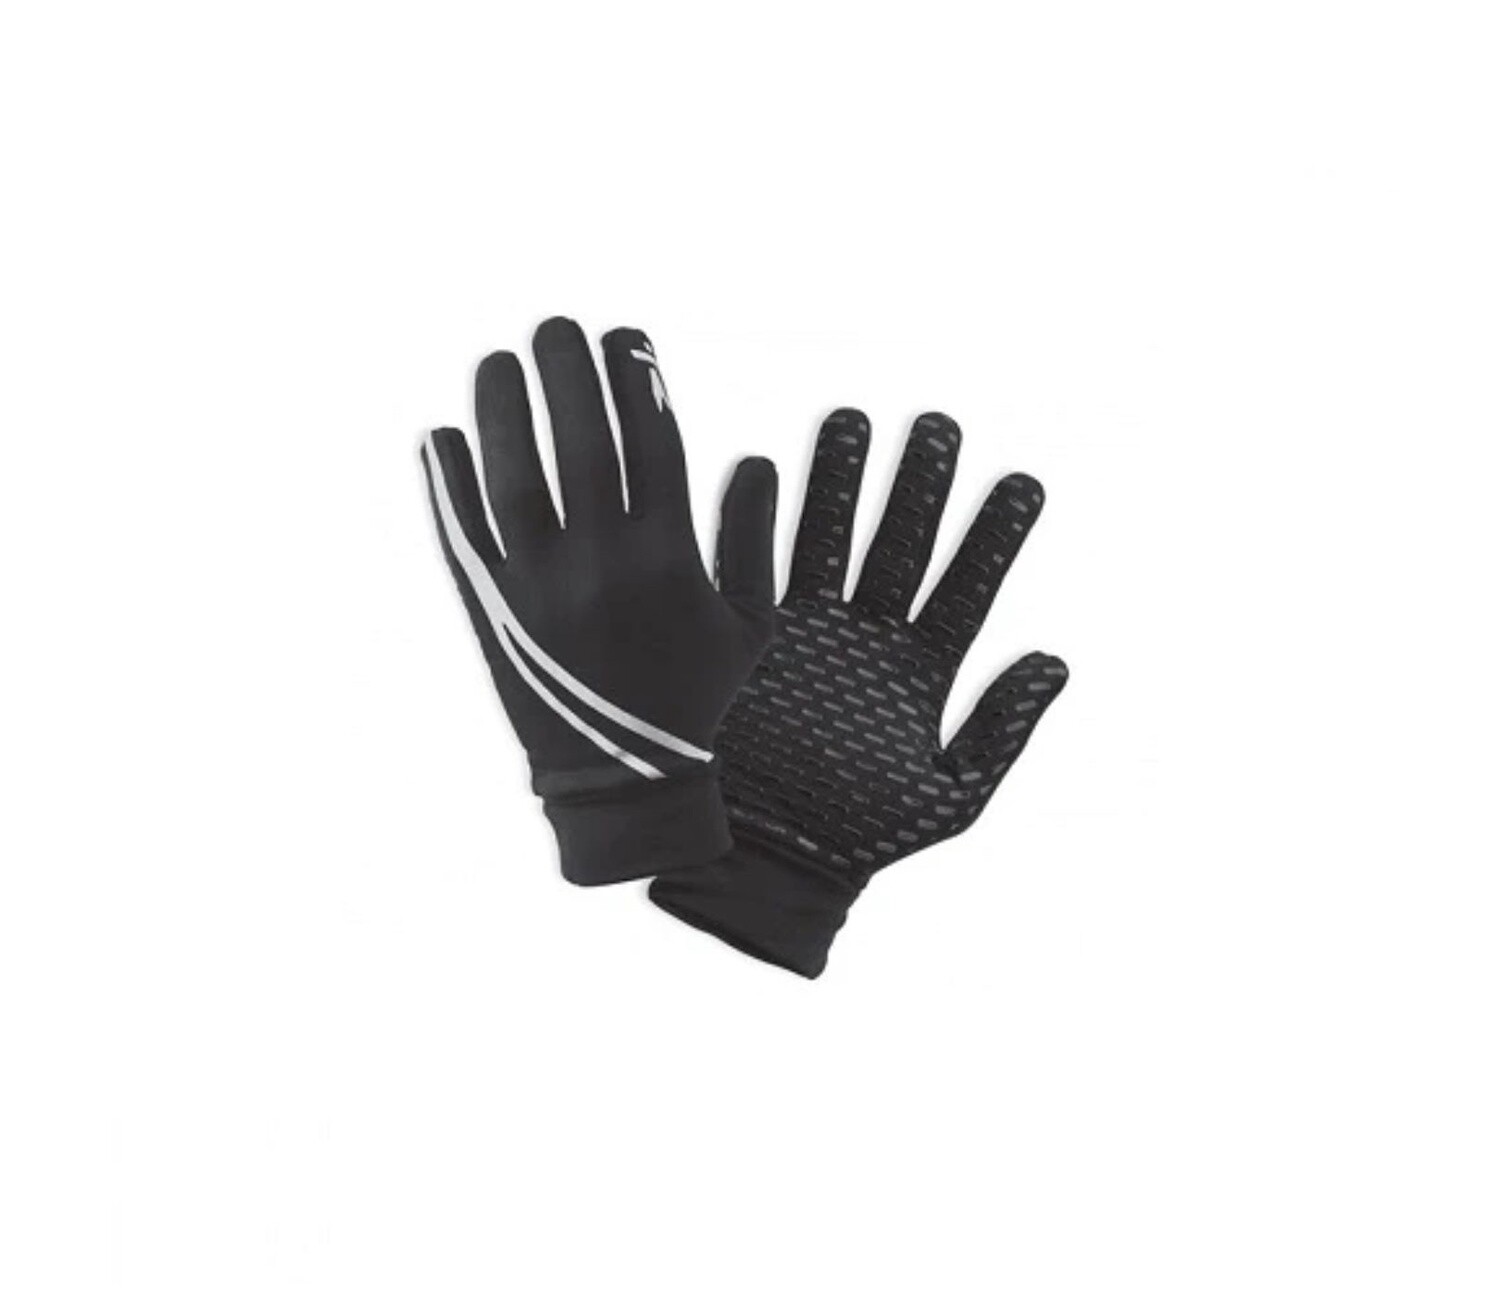 Ryder Fleece Winter Glove Small Black